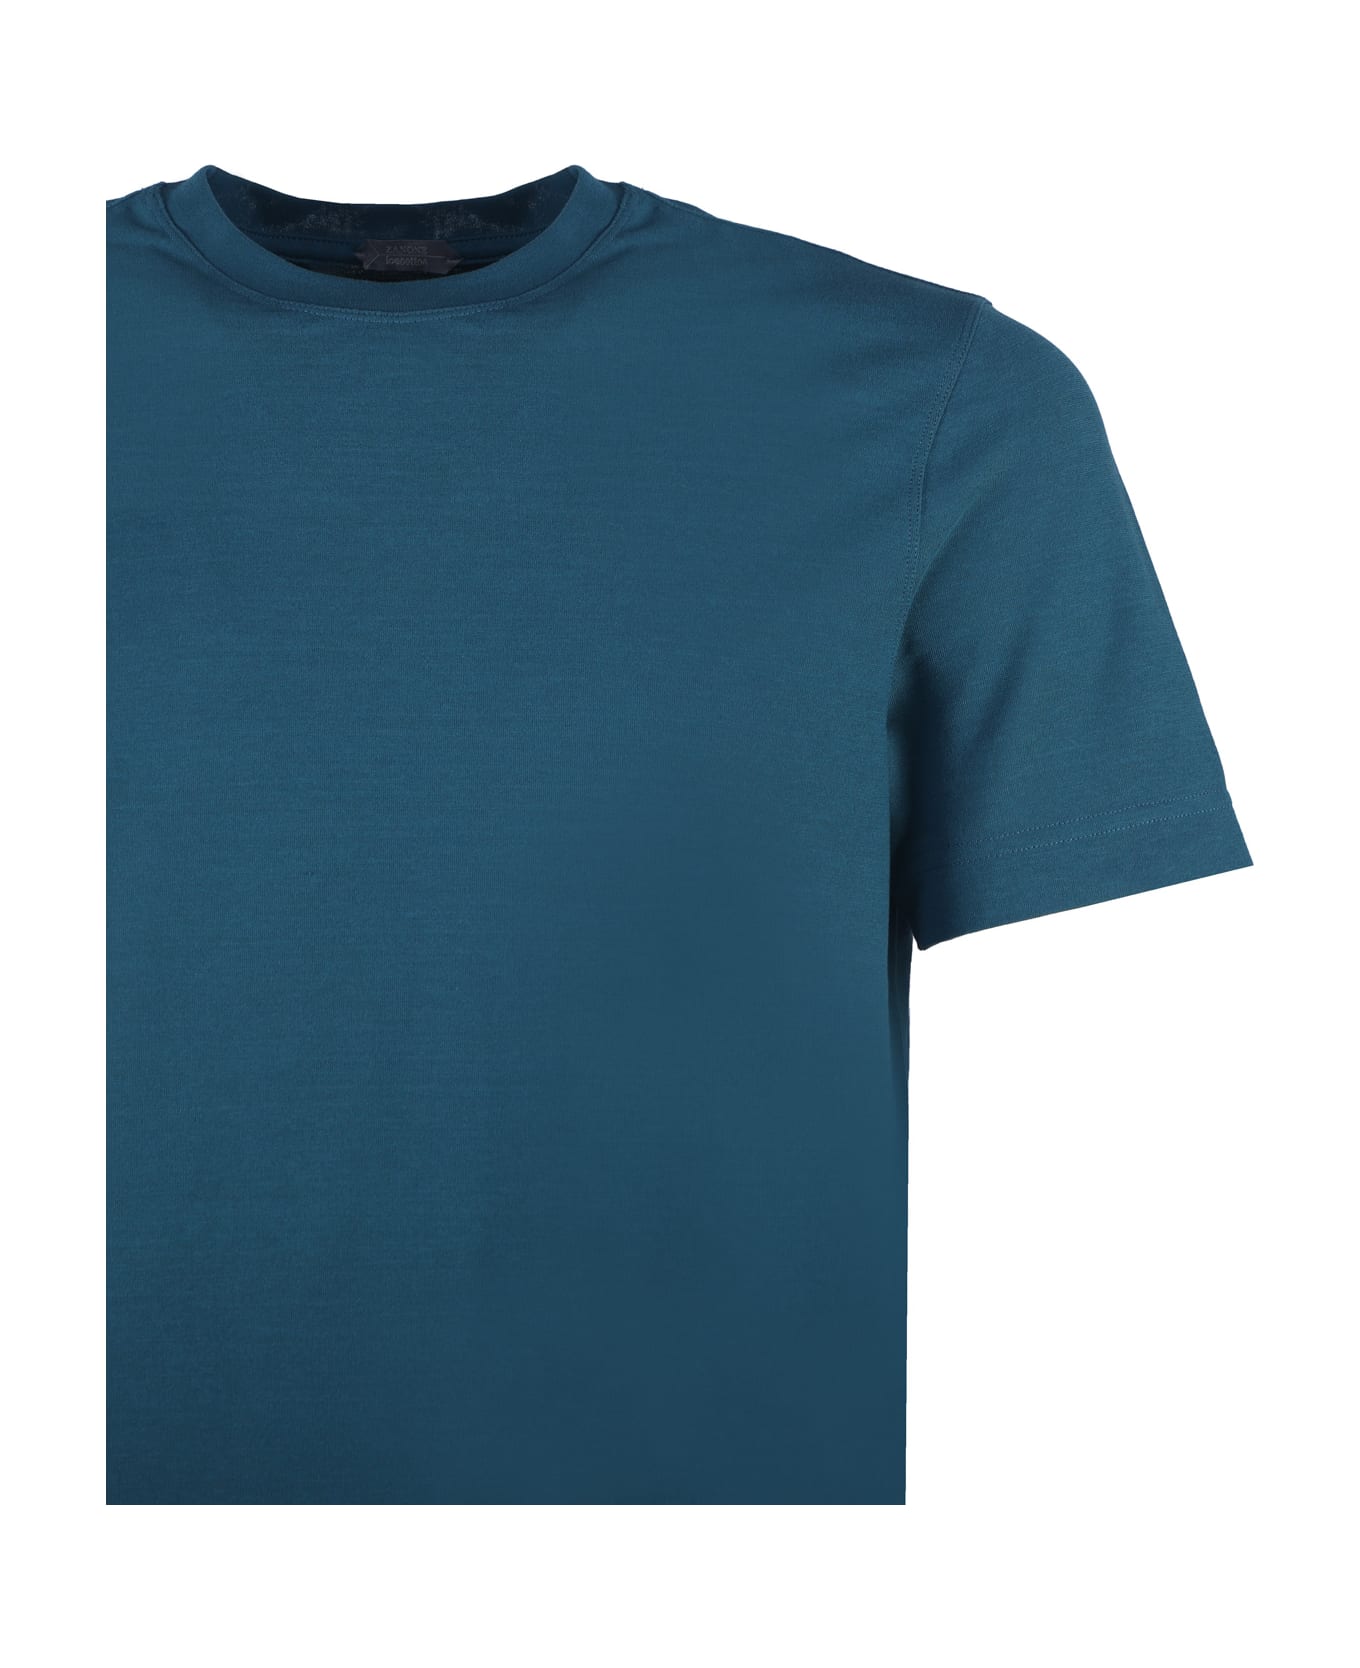 Zanone Cotton T-shirt - Petrol